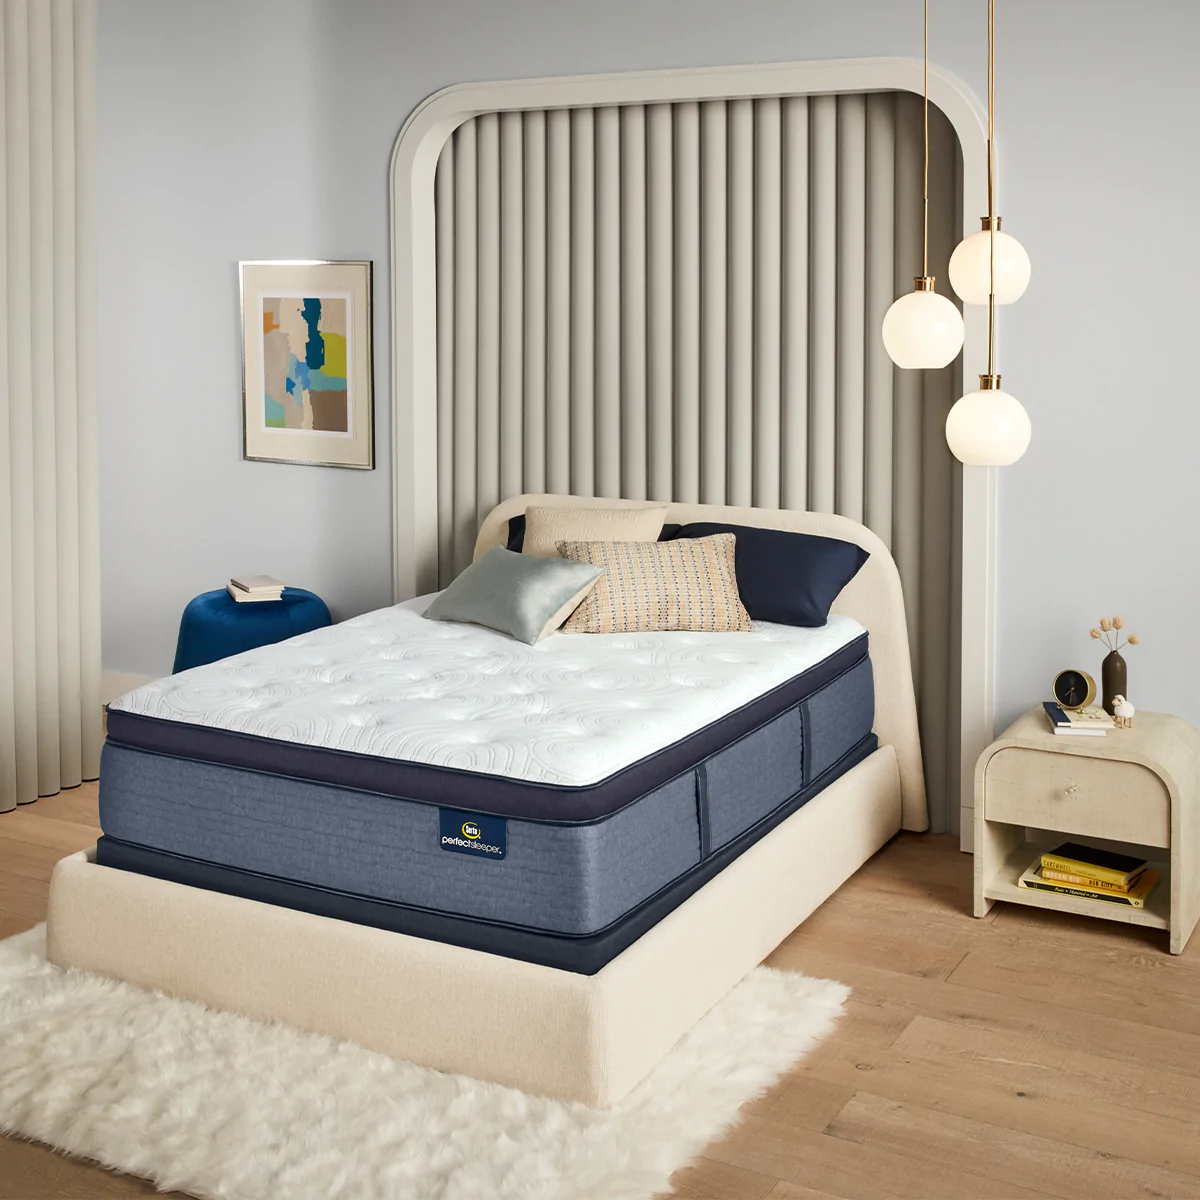 Serta Perfect Sleeper Castara Pillow Top Mattress Review